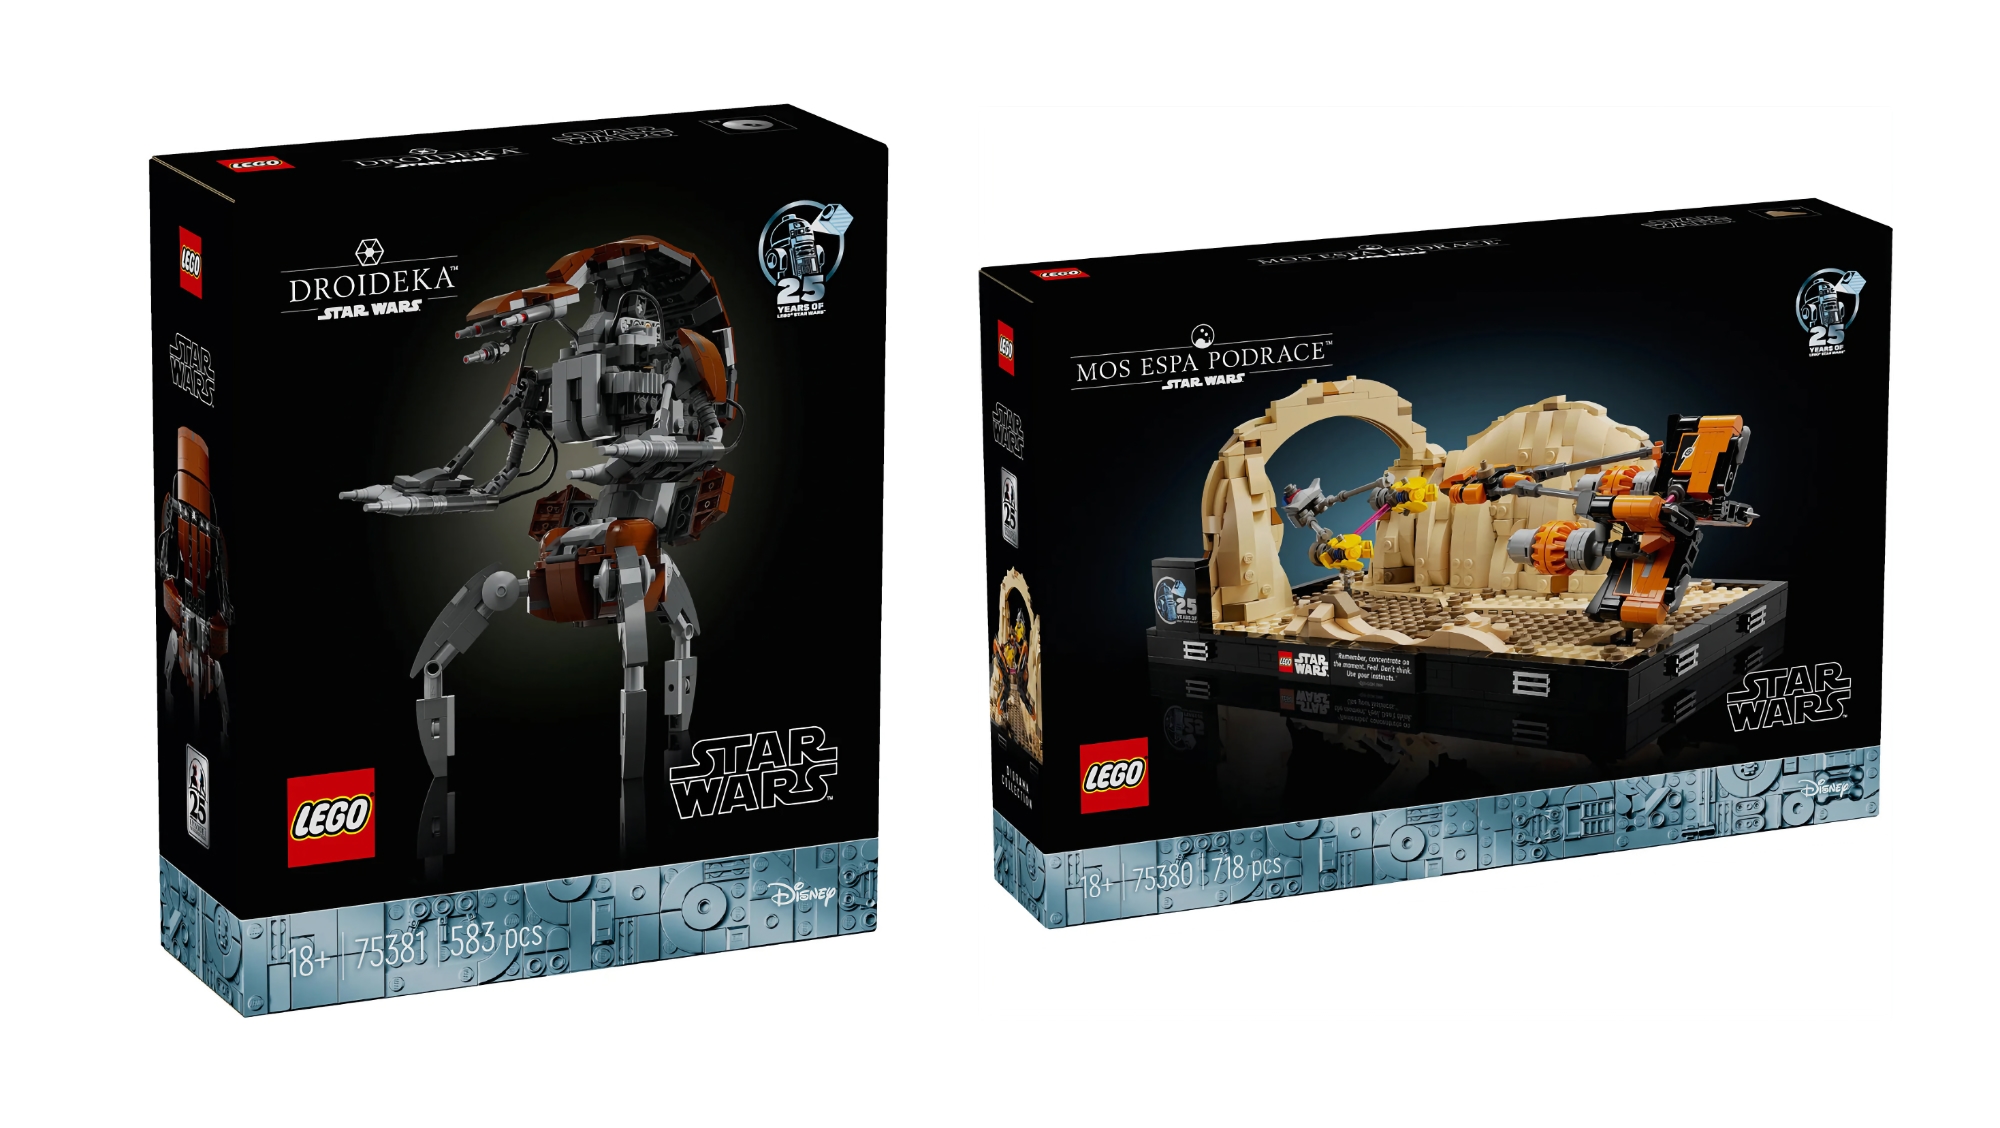 Mos espa Podrace e Droideka: LEGO rilascerà due nuovi set per i fan di Star Wars a maggio